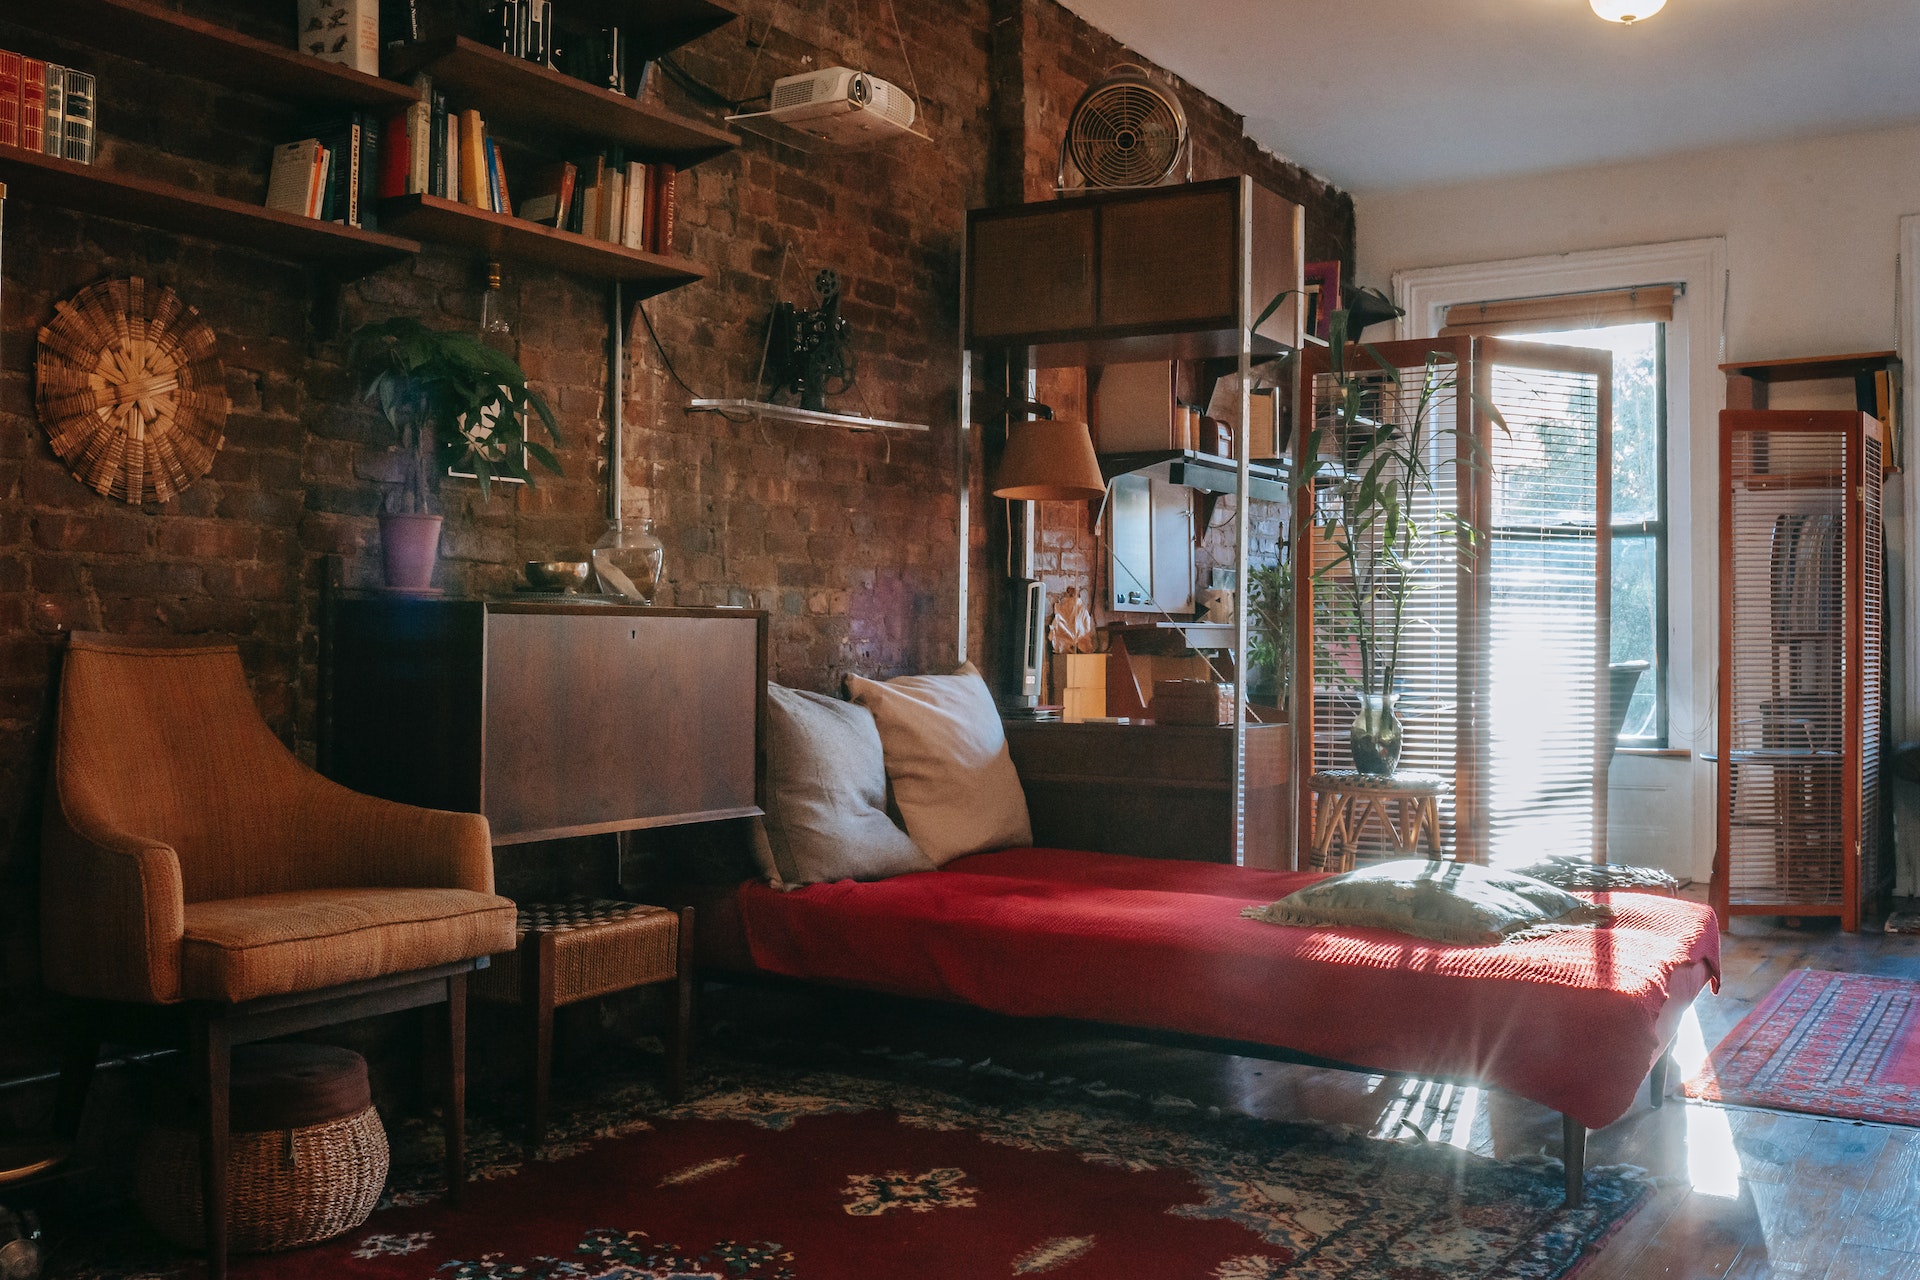 Classic bedroom interior featuring antique rugs